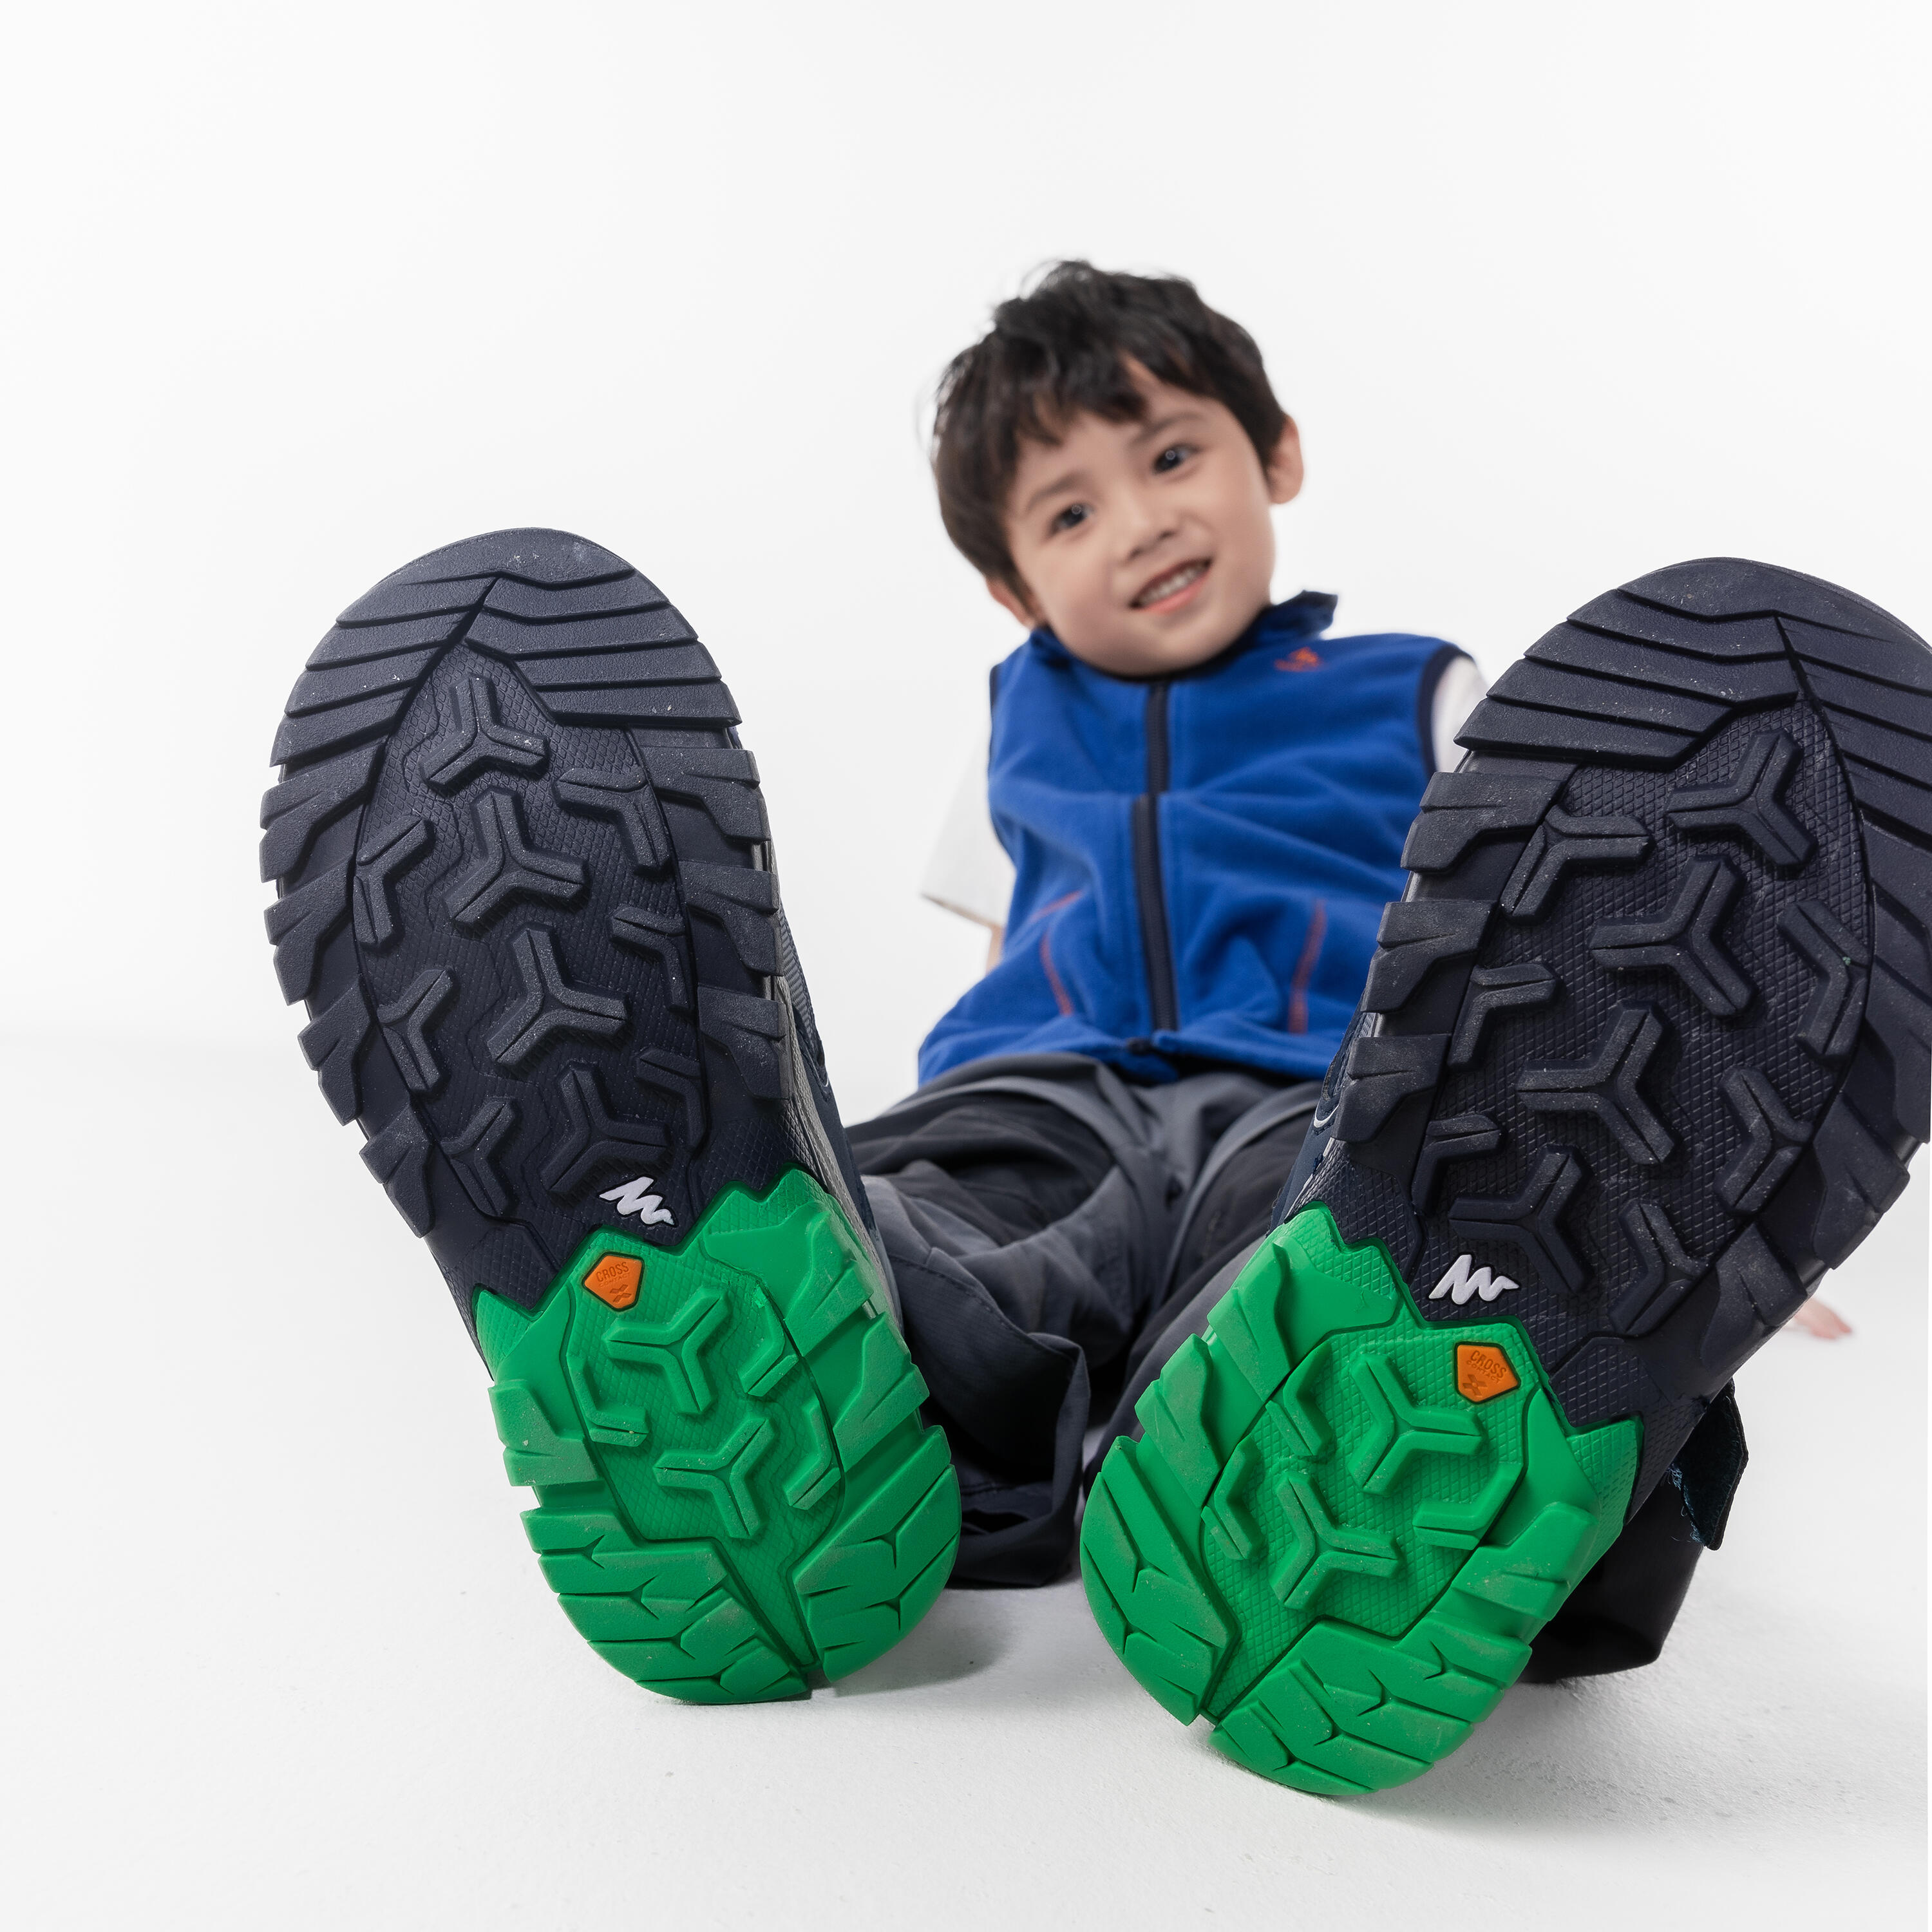 Chaussures de randonnée avec fermeture autoagrippante enfant – Crossrock vert - QUECHUA